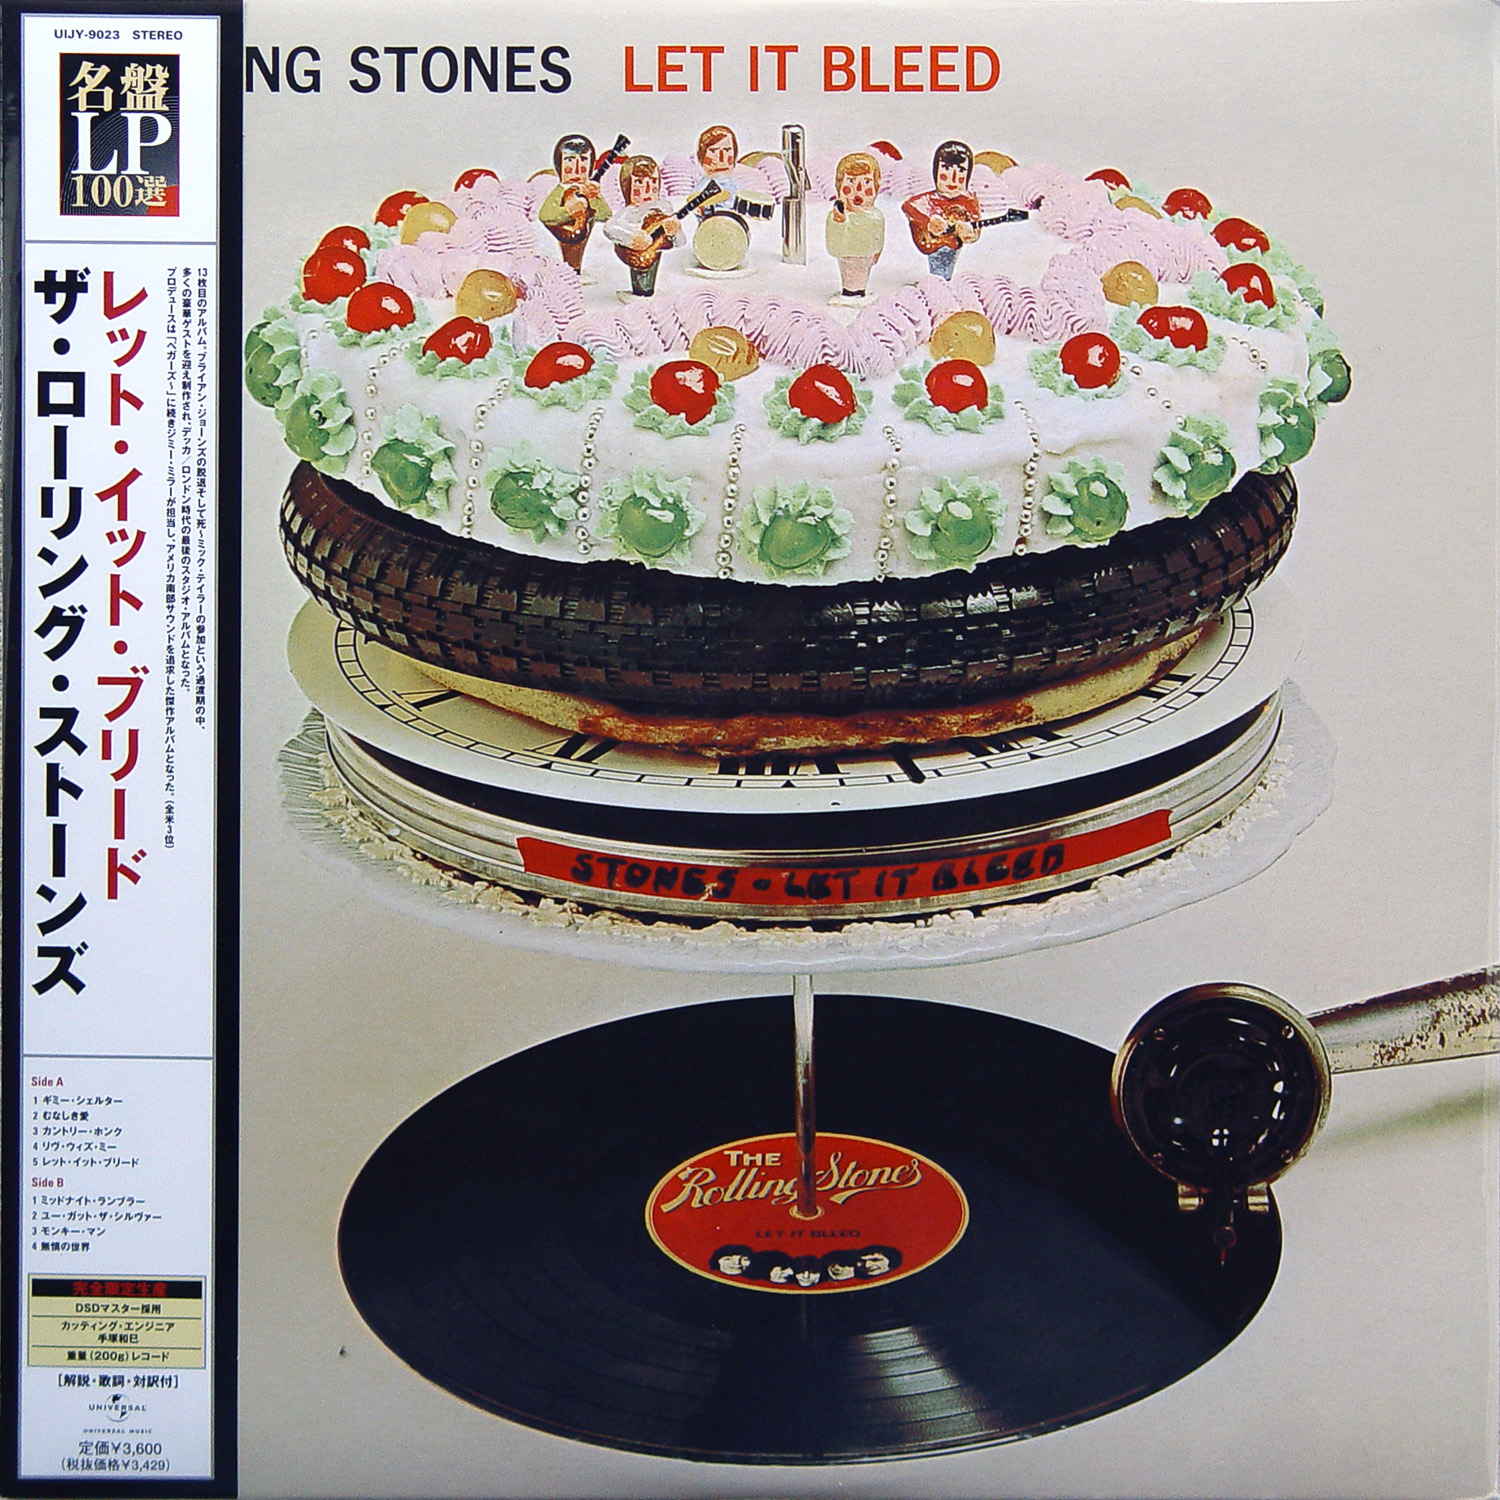 Artwork - Rolling Stones - Let it Bleed post.jpg